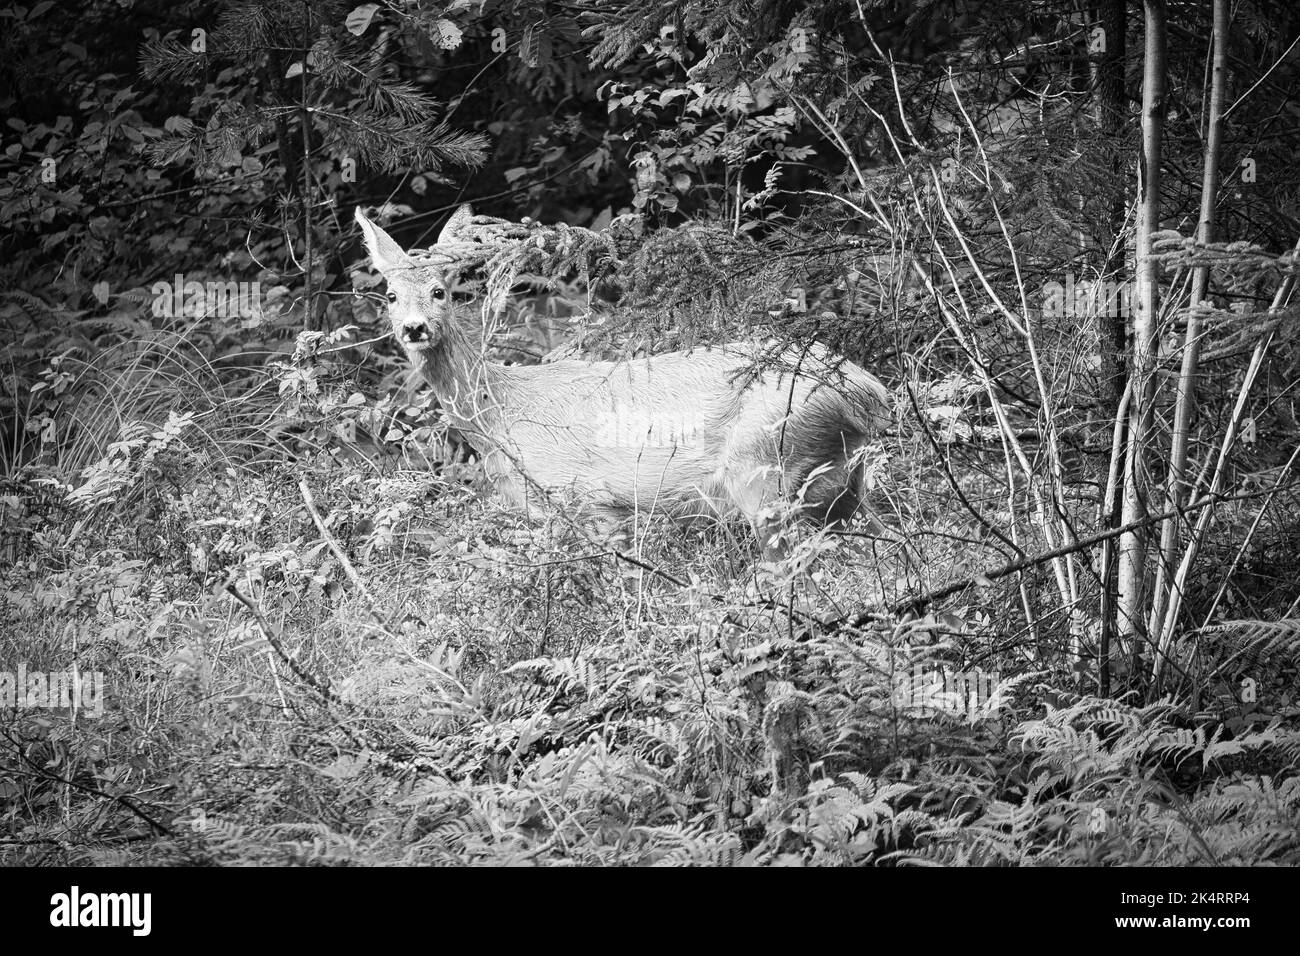 Cerf en noir et blanc tiré sur une clairière en face de la forêt avec la vue de l'observateur. Faune observée en Suède. Enregistrement de la nature de Banque D'Images